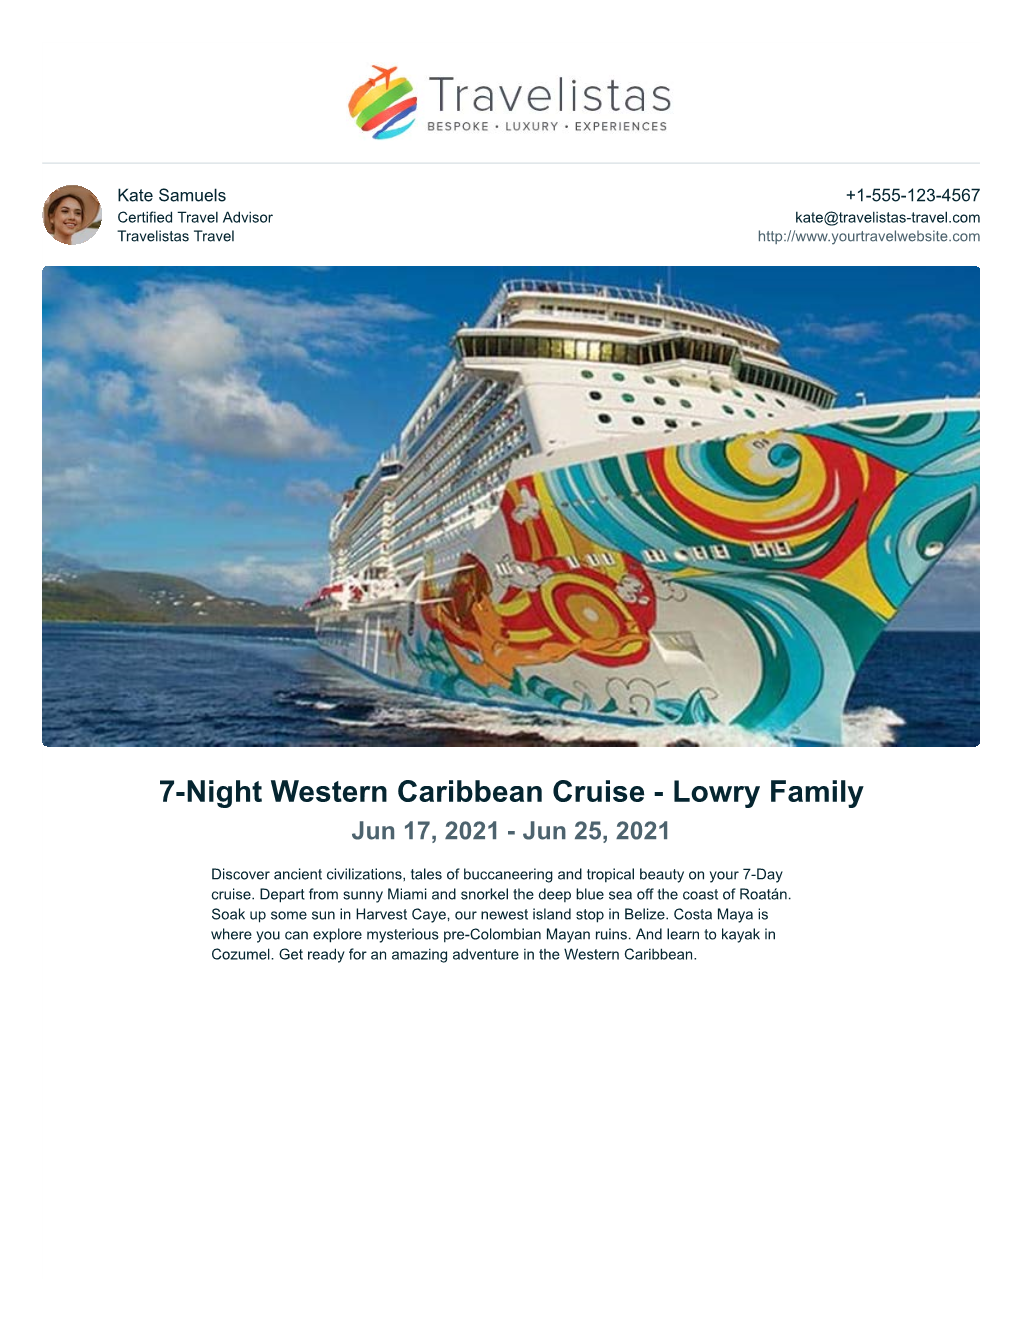 7-Night Western Caribbean Cruise - Lowry Family Jun 17, 2021 - Jun 25, 2021